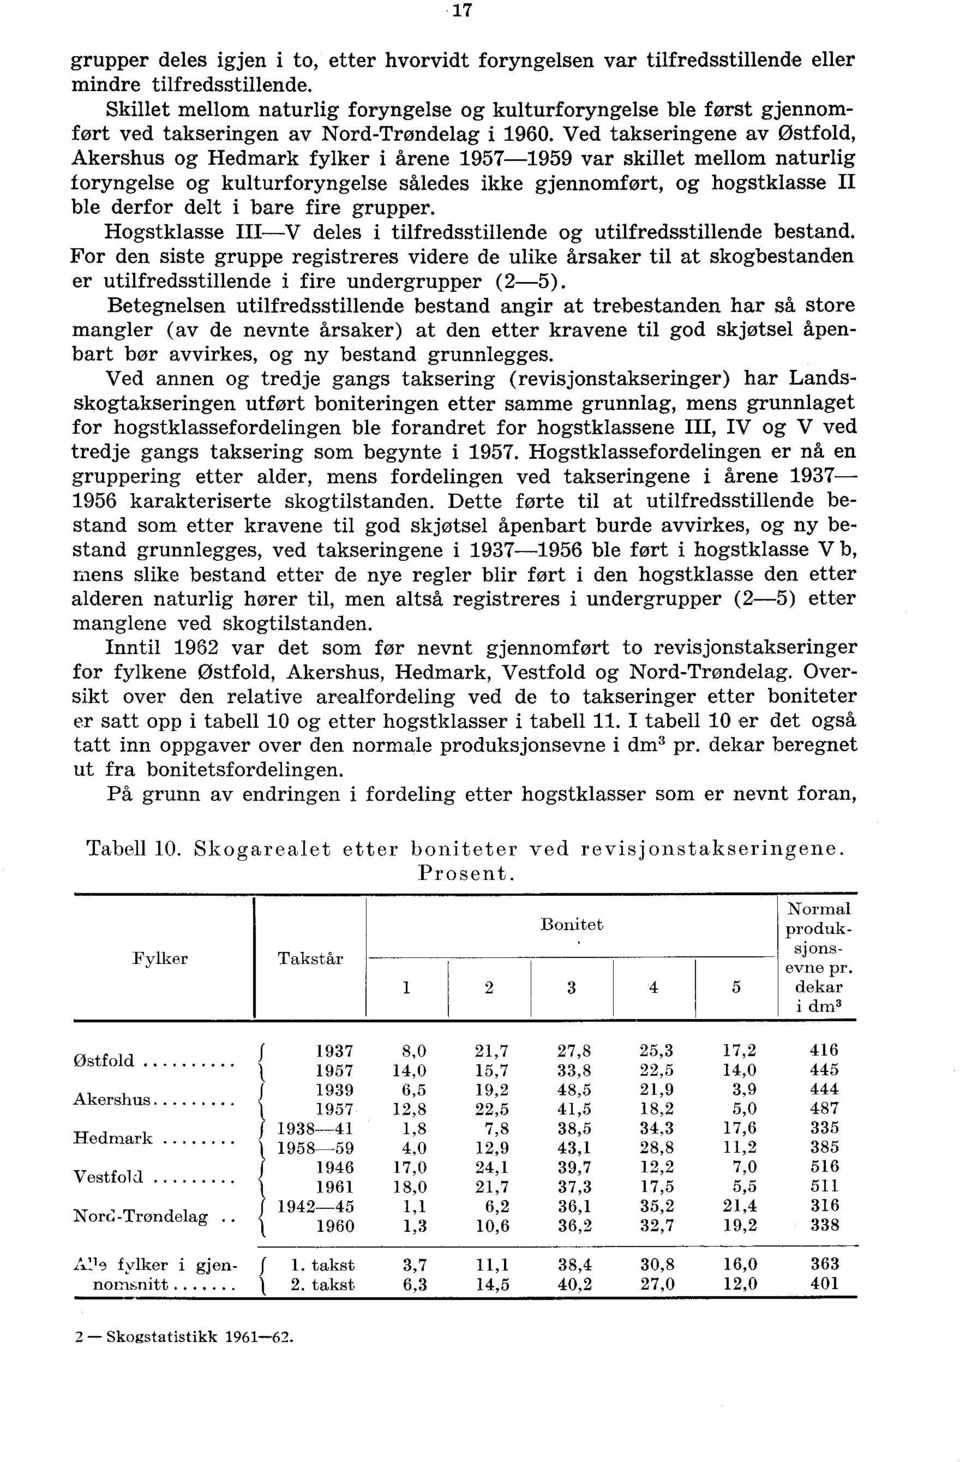 Ved takseringene av Østfold, Akershus og Hedmark fylker i årene 1957-1959 var skillet mellom naturlig foryngelse og kulturforyngelse således ikke gjennomført, og hogstklasse II ble derfor delt i bare